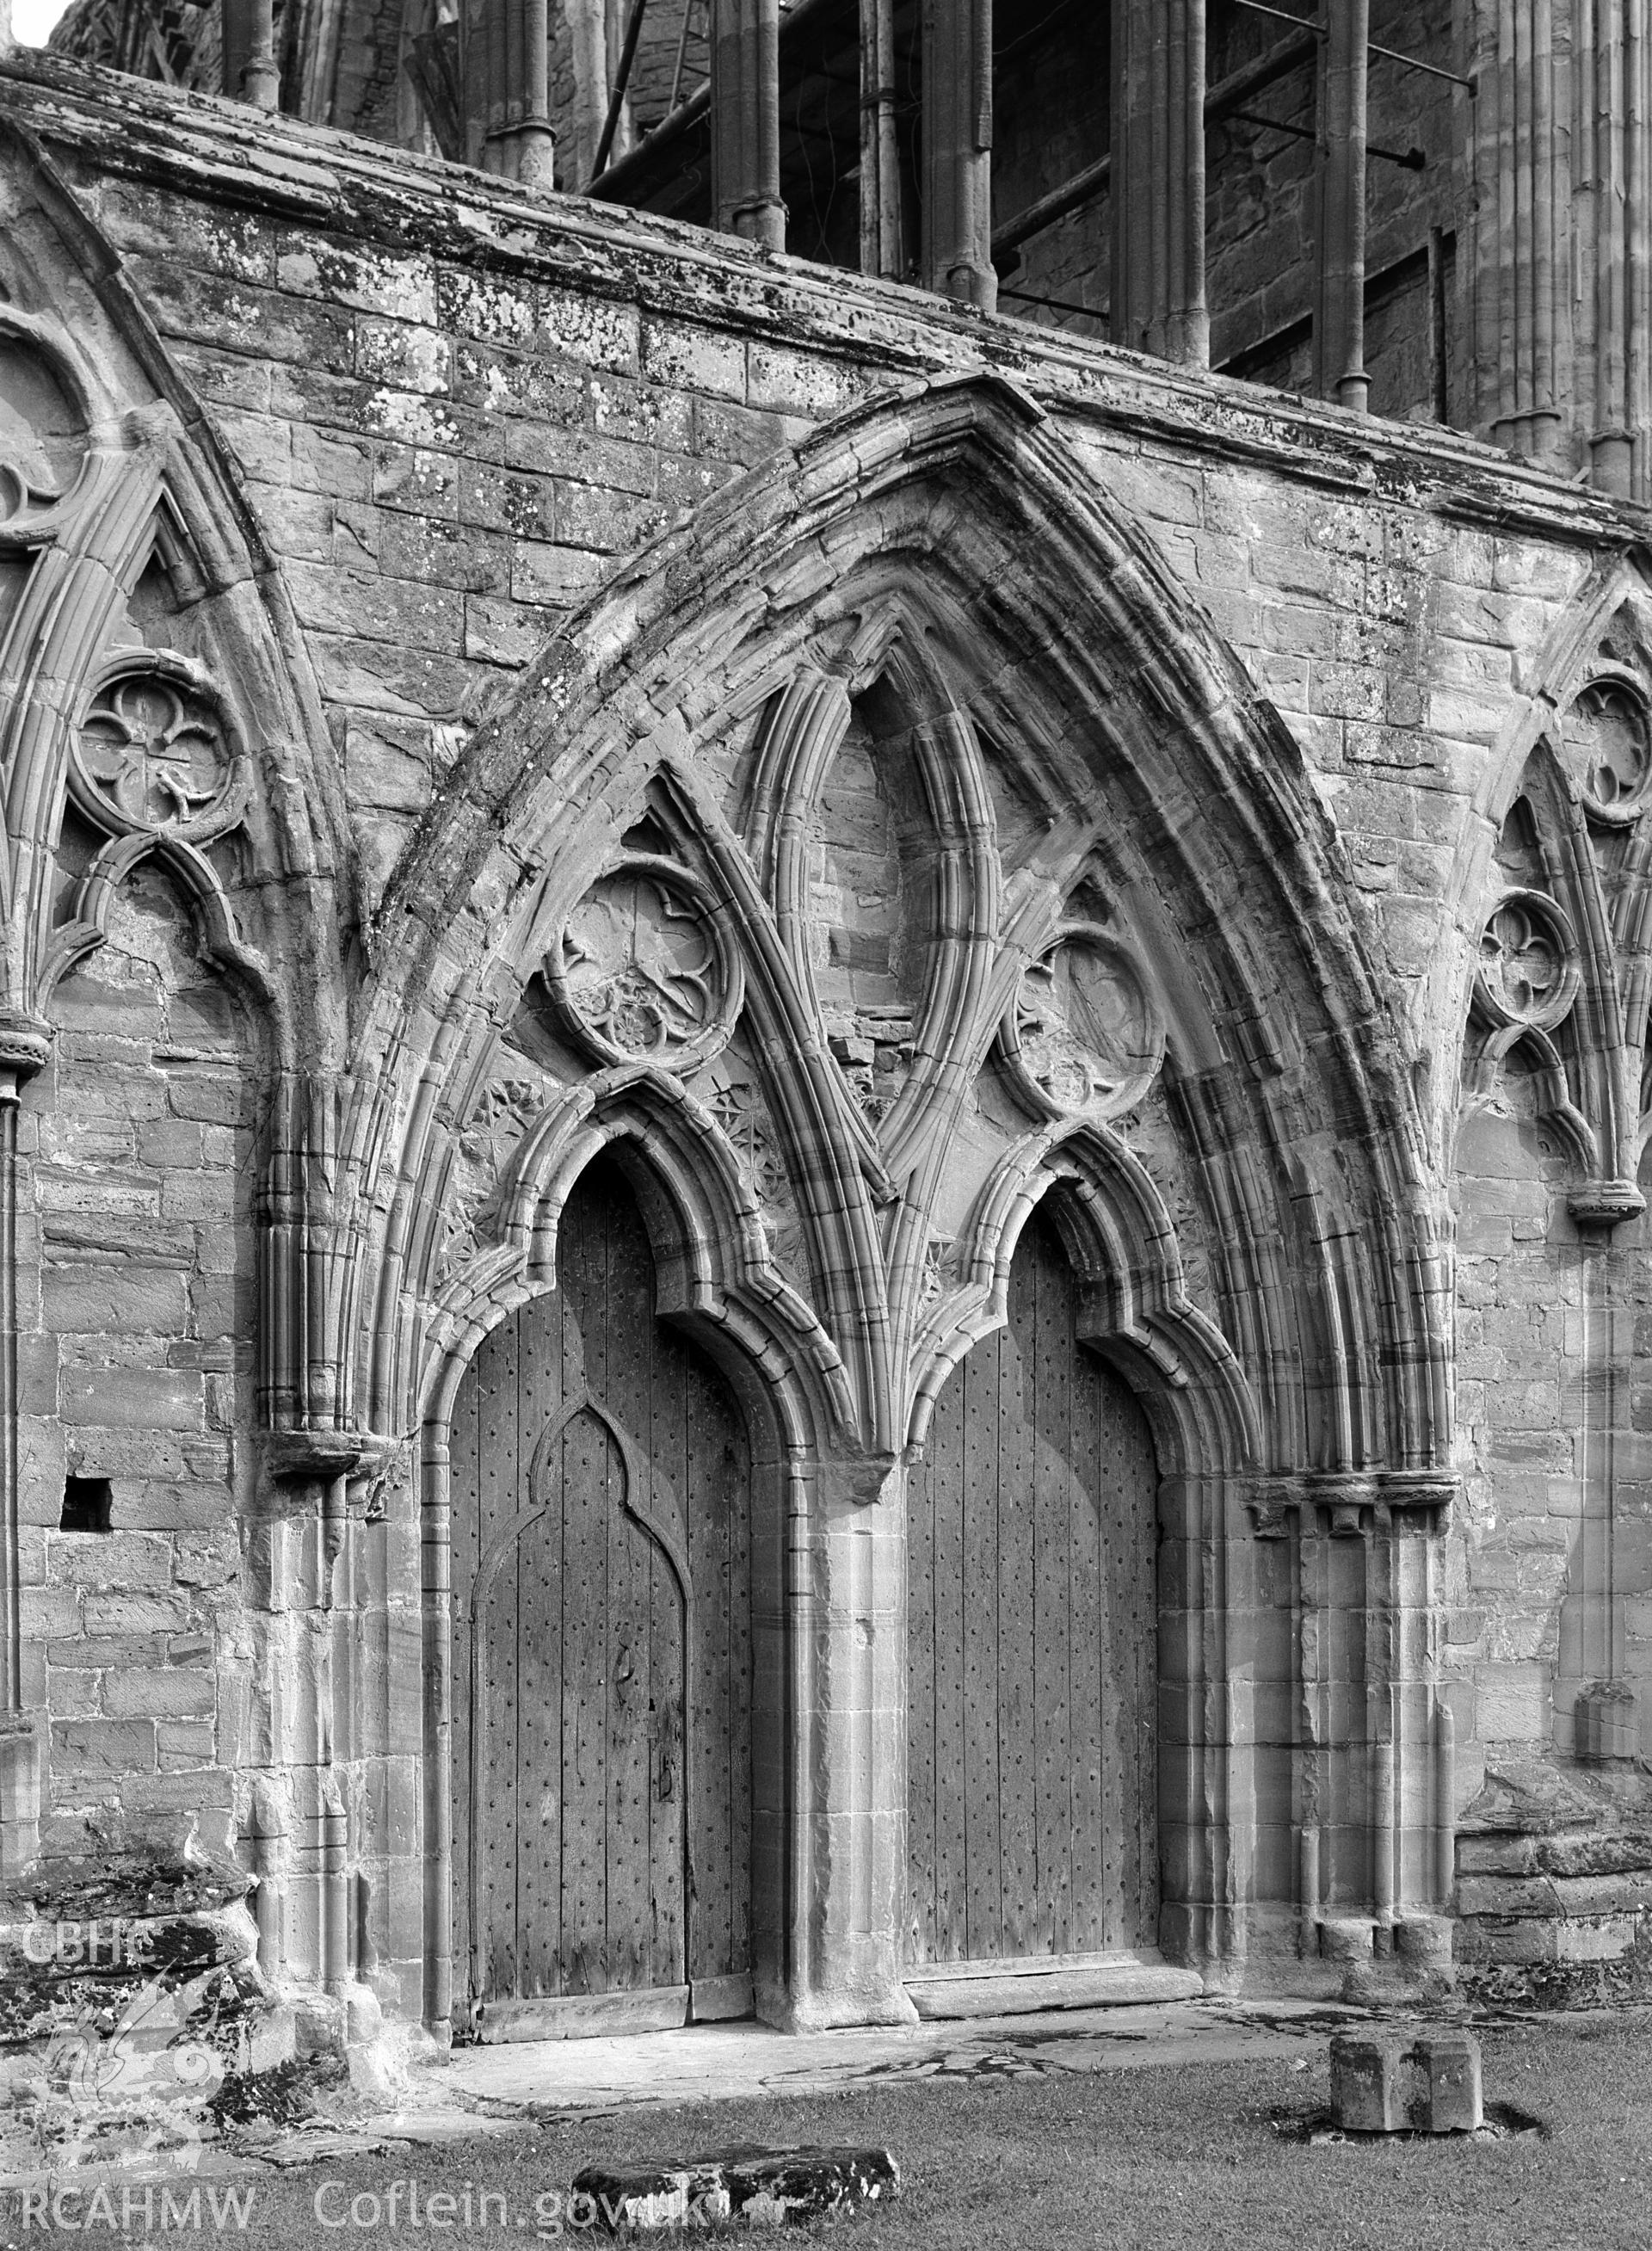 Exterior view of Tintern Abbey taken by Clayton.